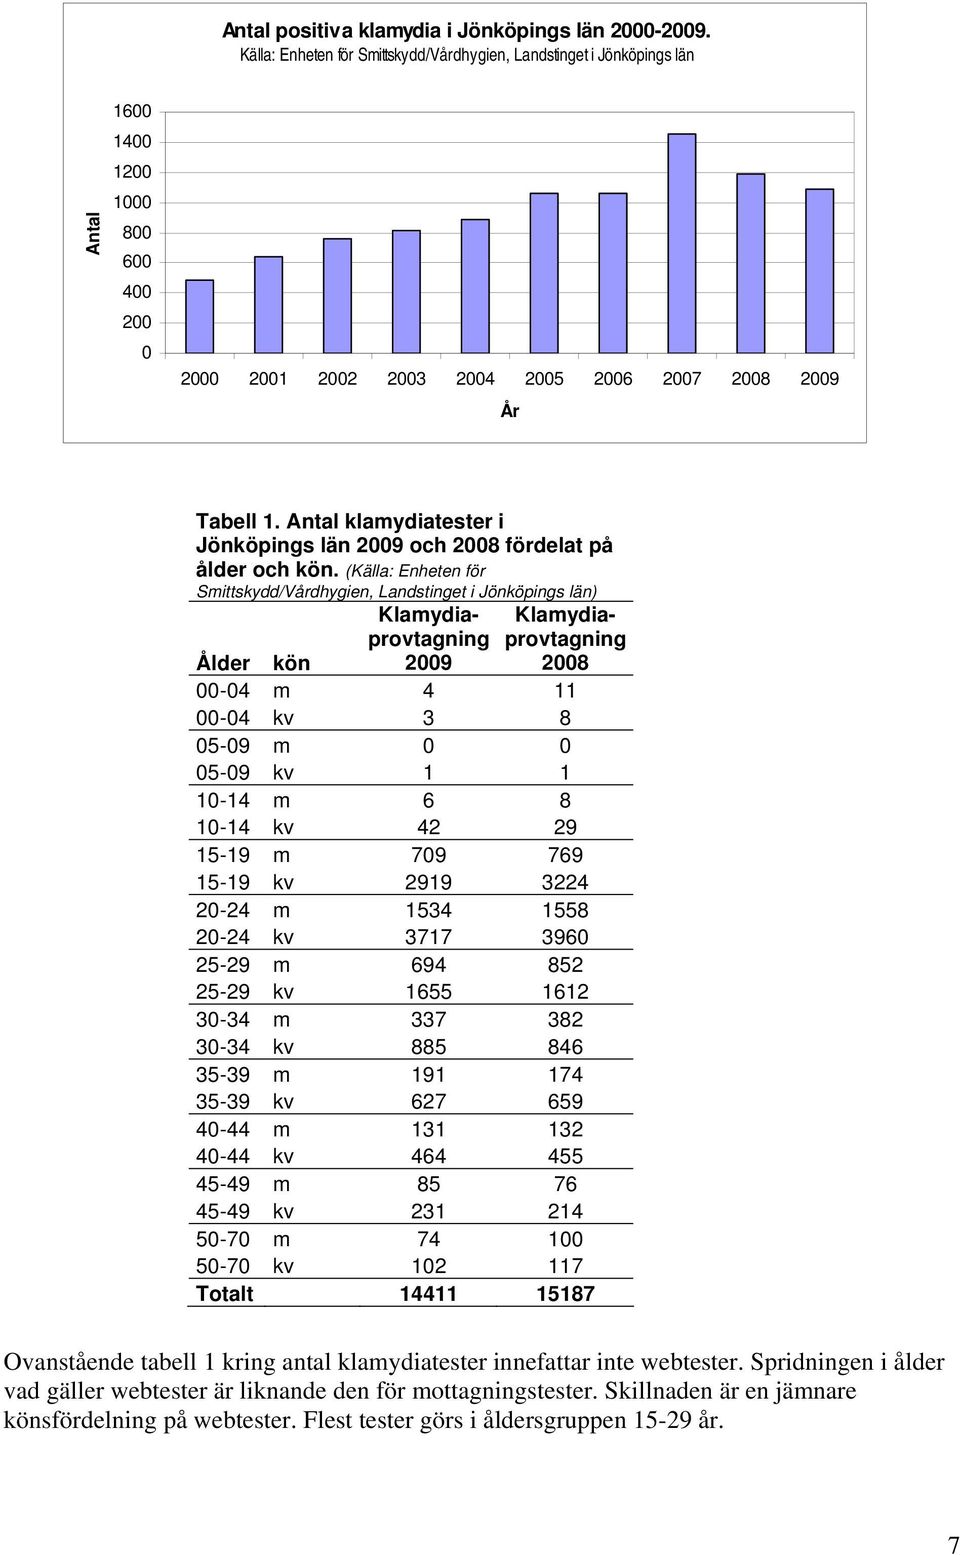 Antal klamydiatester i Jönköpings län 2009 och 2008 fördelat på ålder och kön.